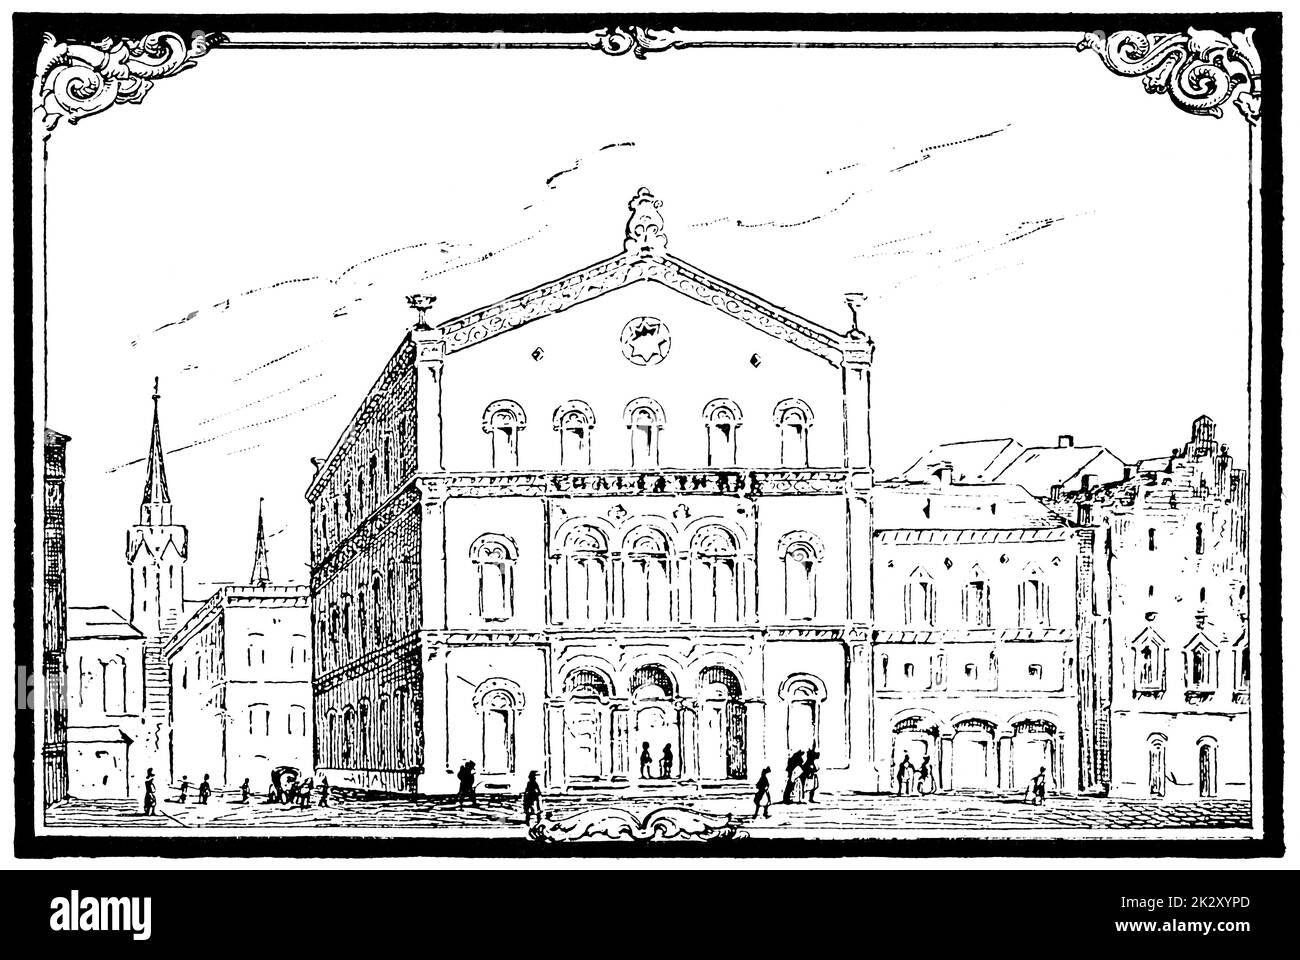 Extérieur du théâtre Thalia (Hambourg). Illustration du 19e siècle. Arrière-plan blanc. Banque D'Images